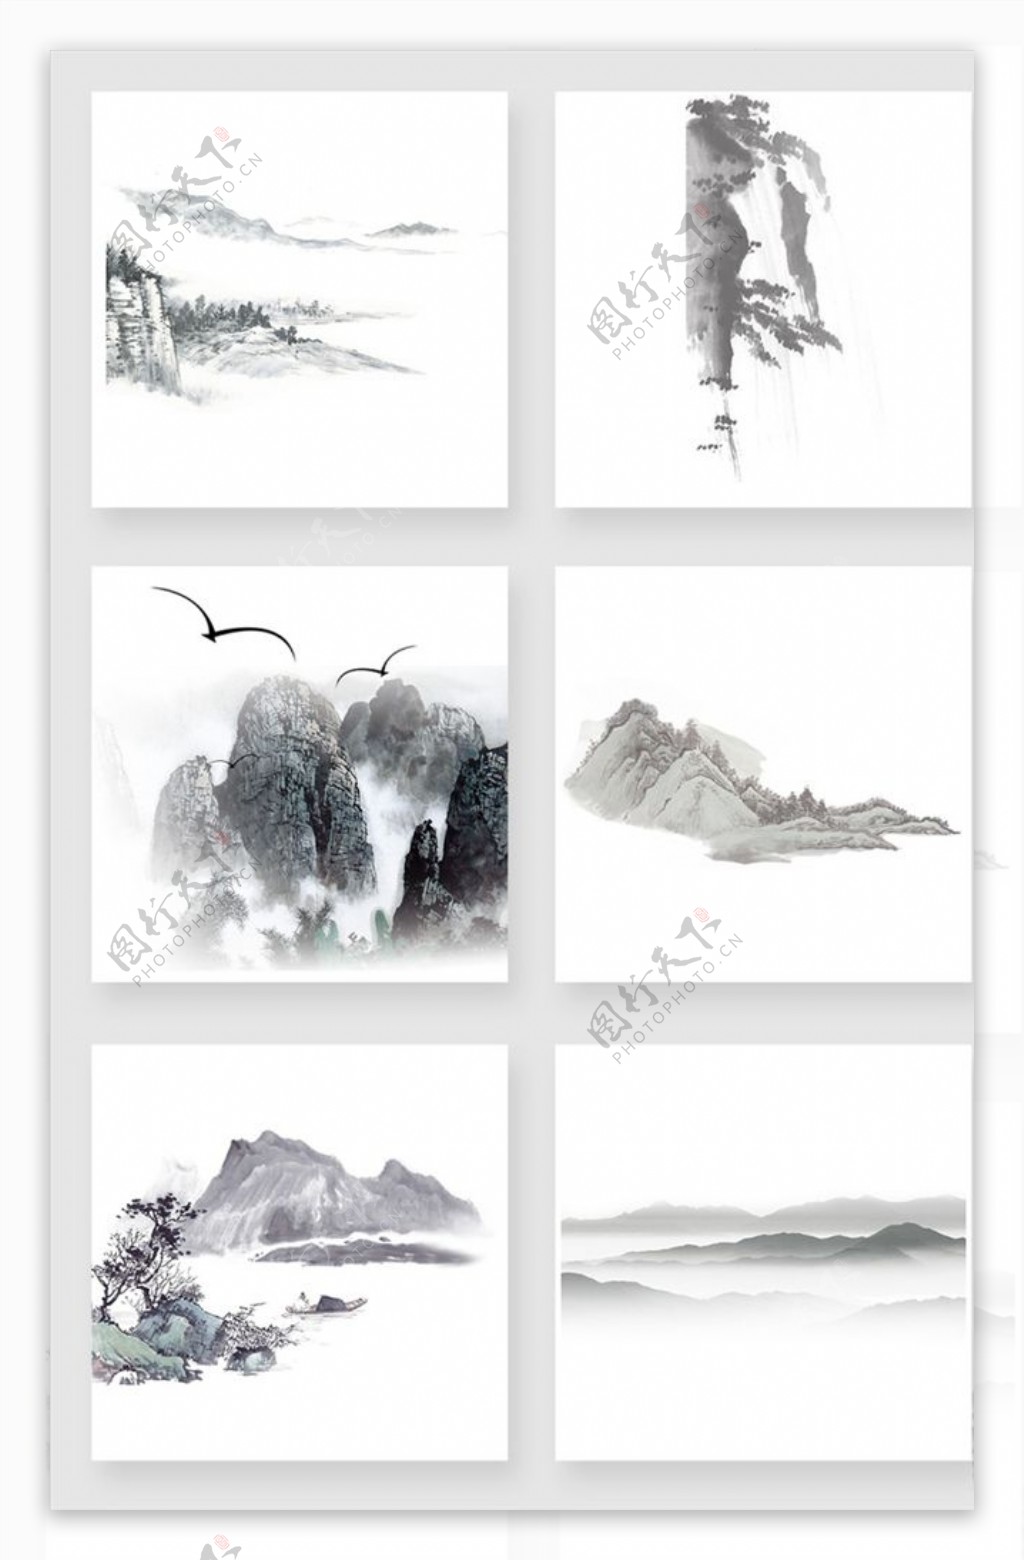 水墨水彩中国风山设计素材